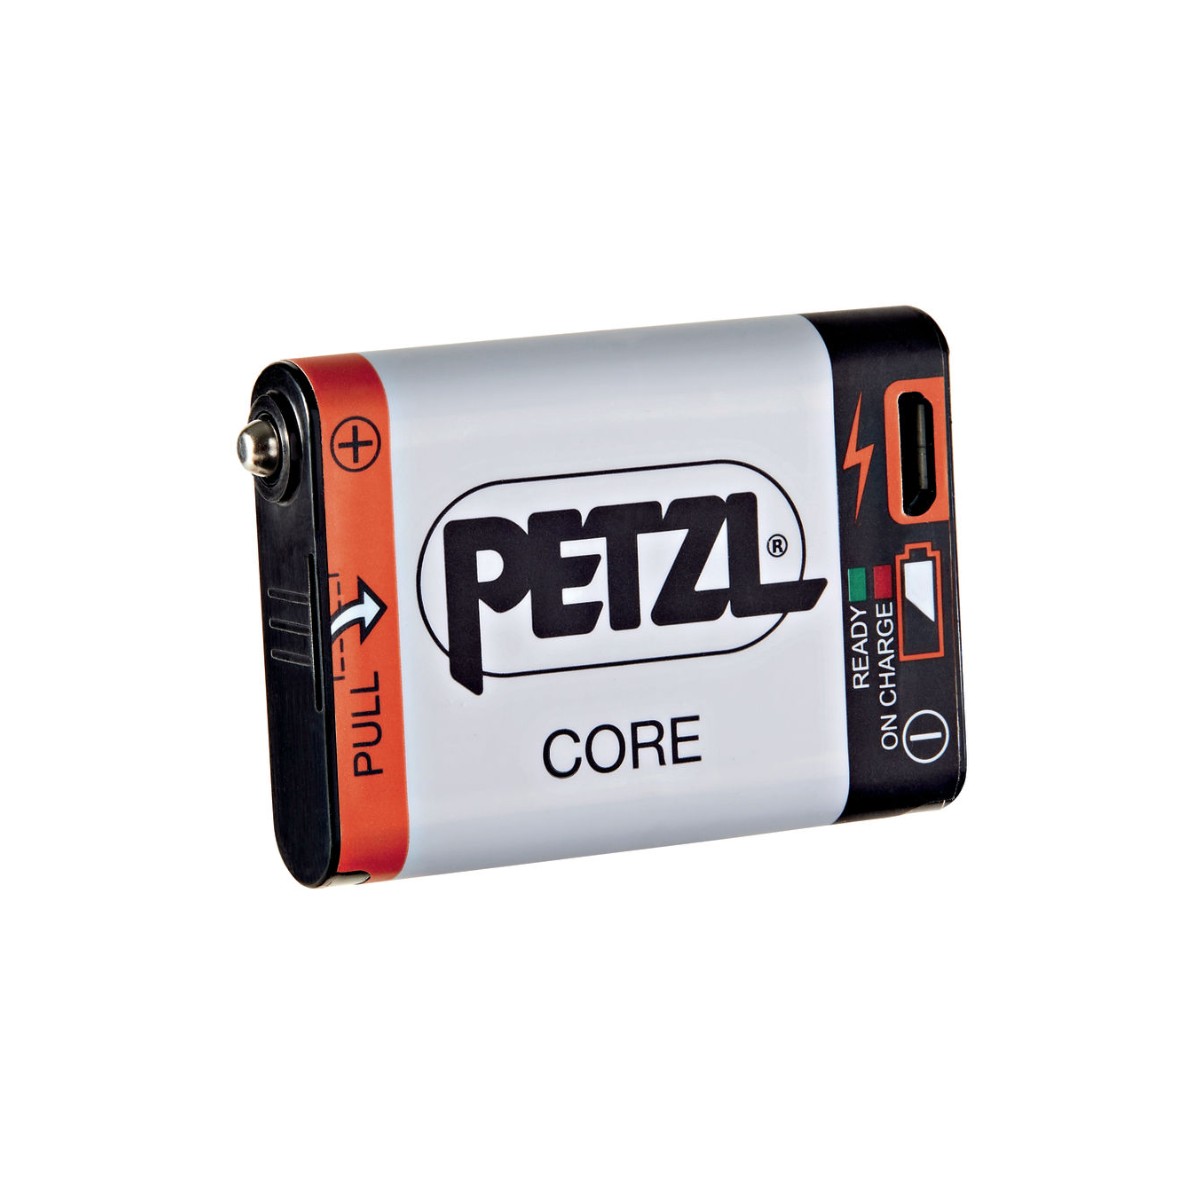 CC U günstig Kaufen-Petzl Accu Core Batterie. Petzl Accu Core Batterie <![CDATA[Petzl Accu Core Akku Batterie kompatibel mit Petzl-Stirnlampen mit HYBRID CONCEPT-Konstruktion. Es wird direkt über den integrierten USB-Anschluss aufgeladen. Die CORE-Batterie ist eine wirtscha